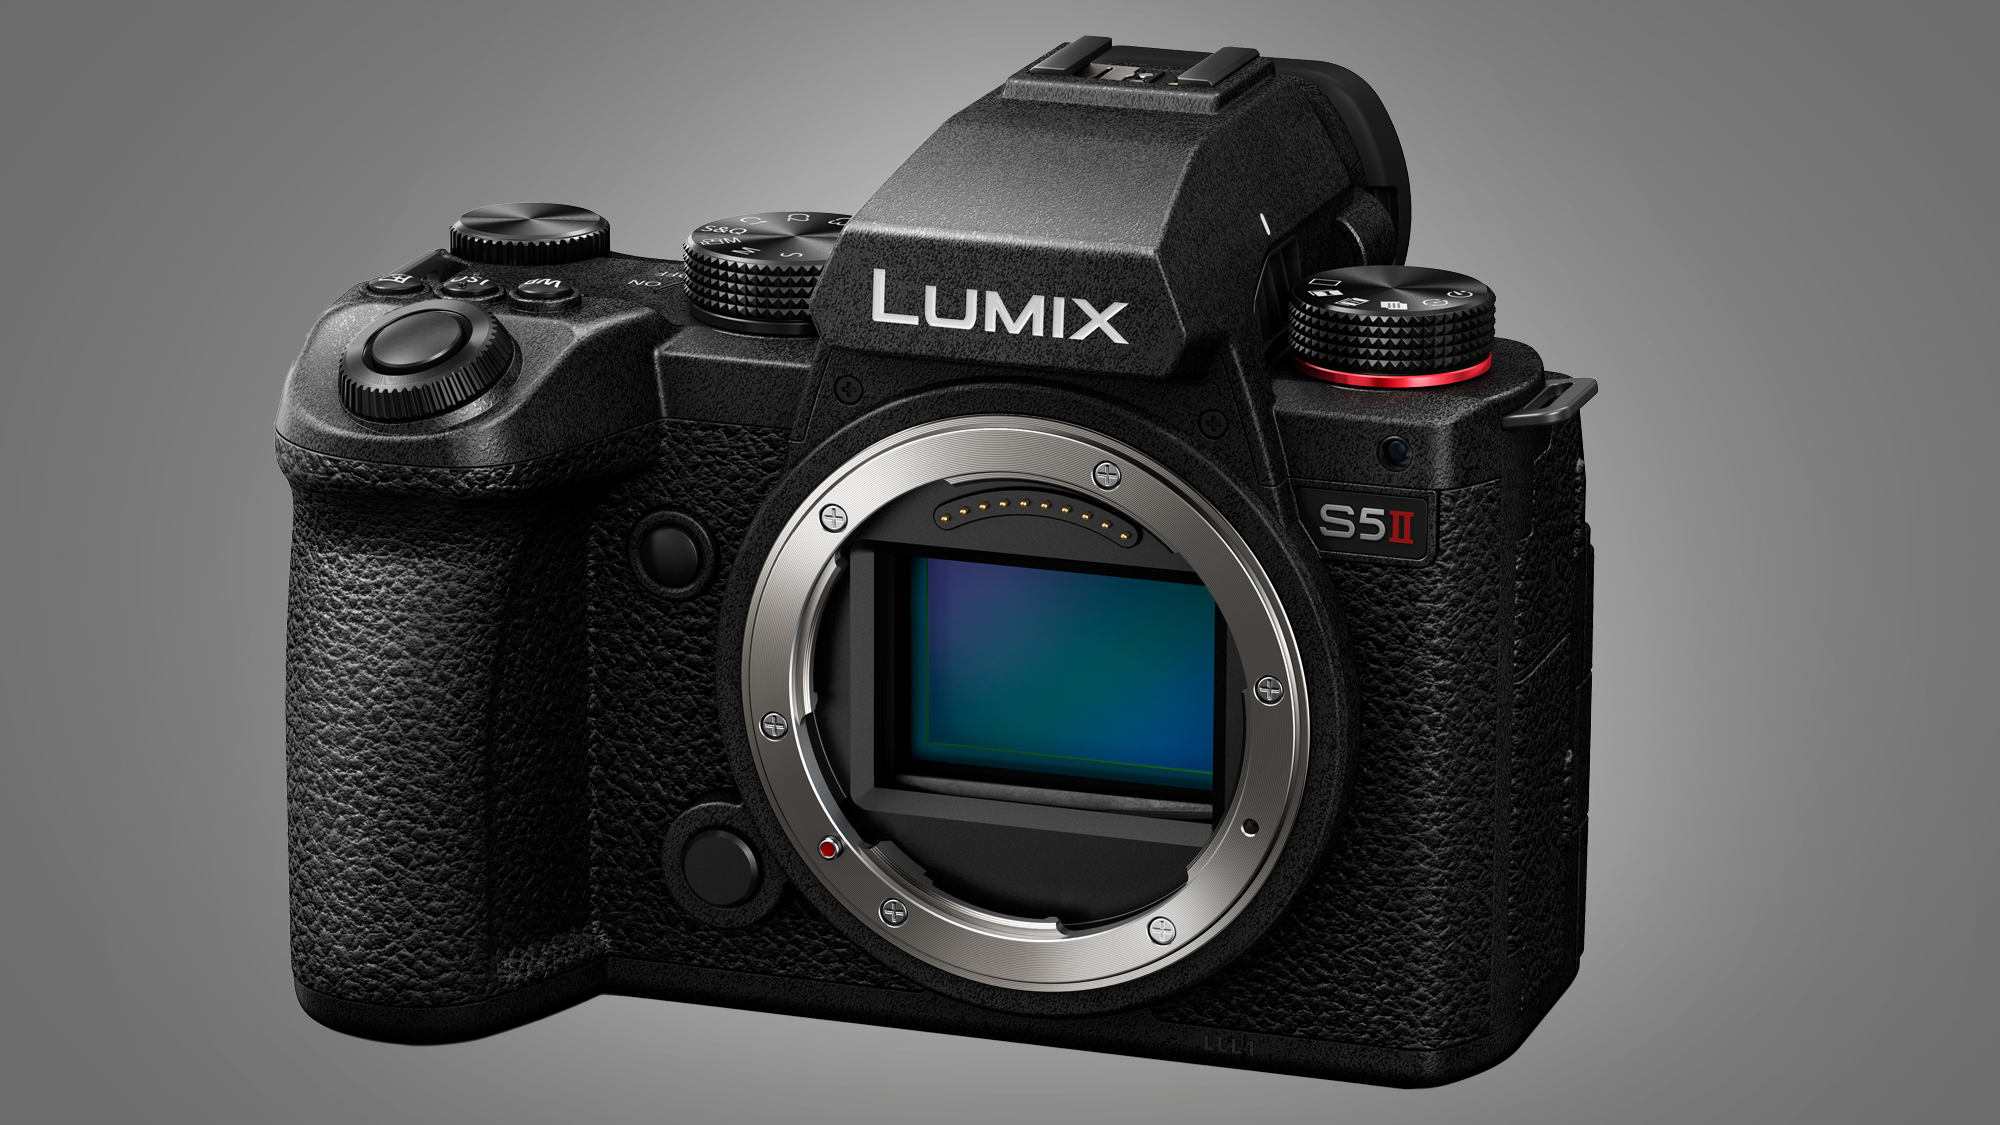 Panasonic Камера Lumix S5 II на сером фоне